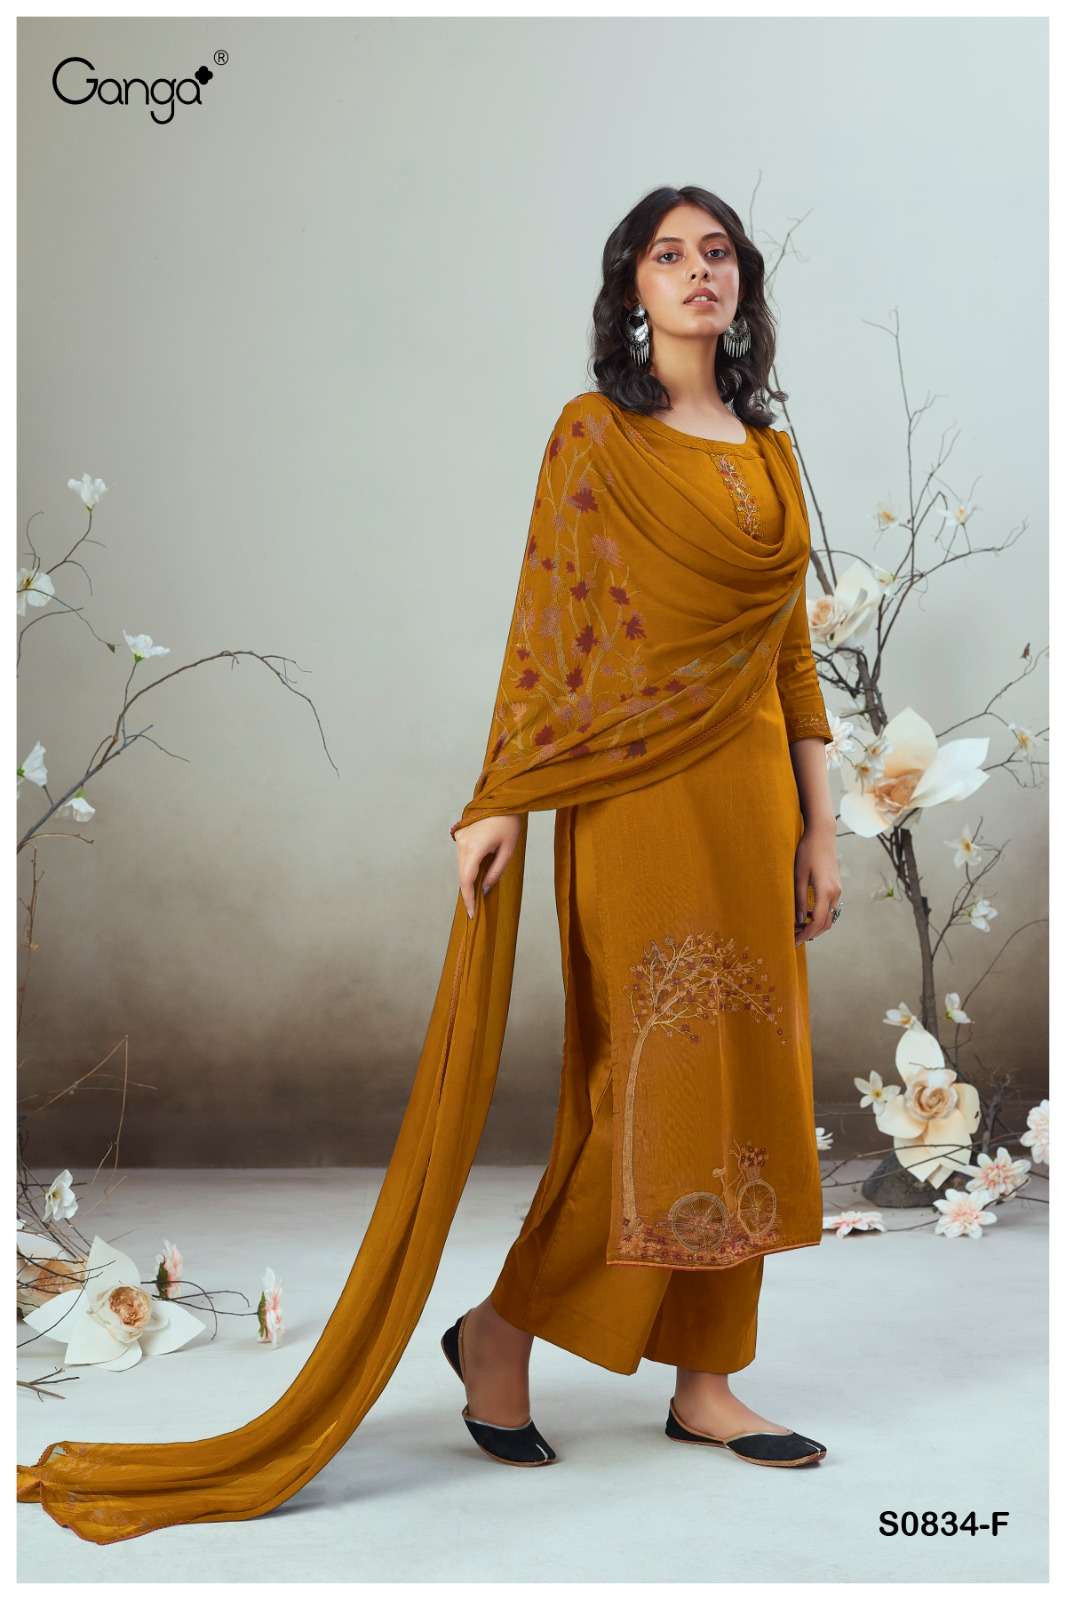 Ganga Alva 834 Premium Designs Jacquard Silk Exclusive Suits New Designs